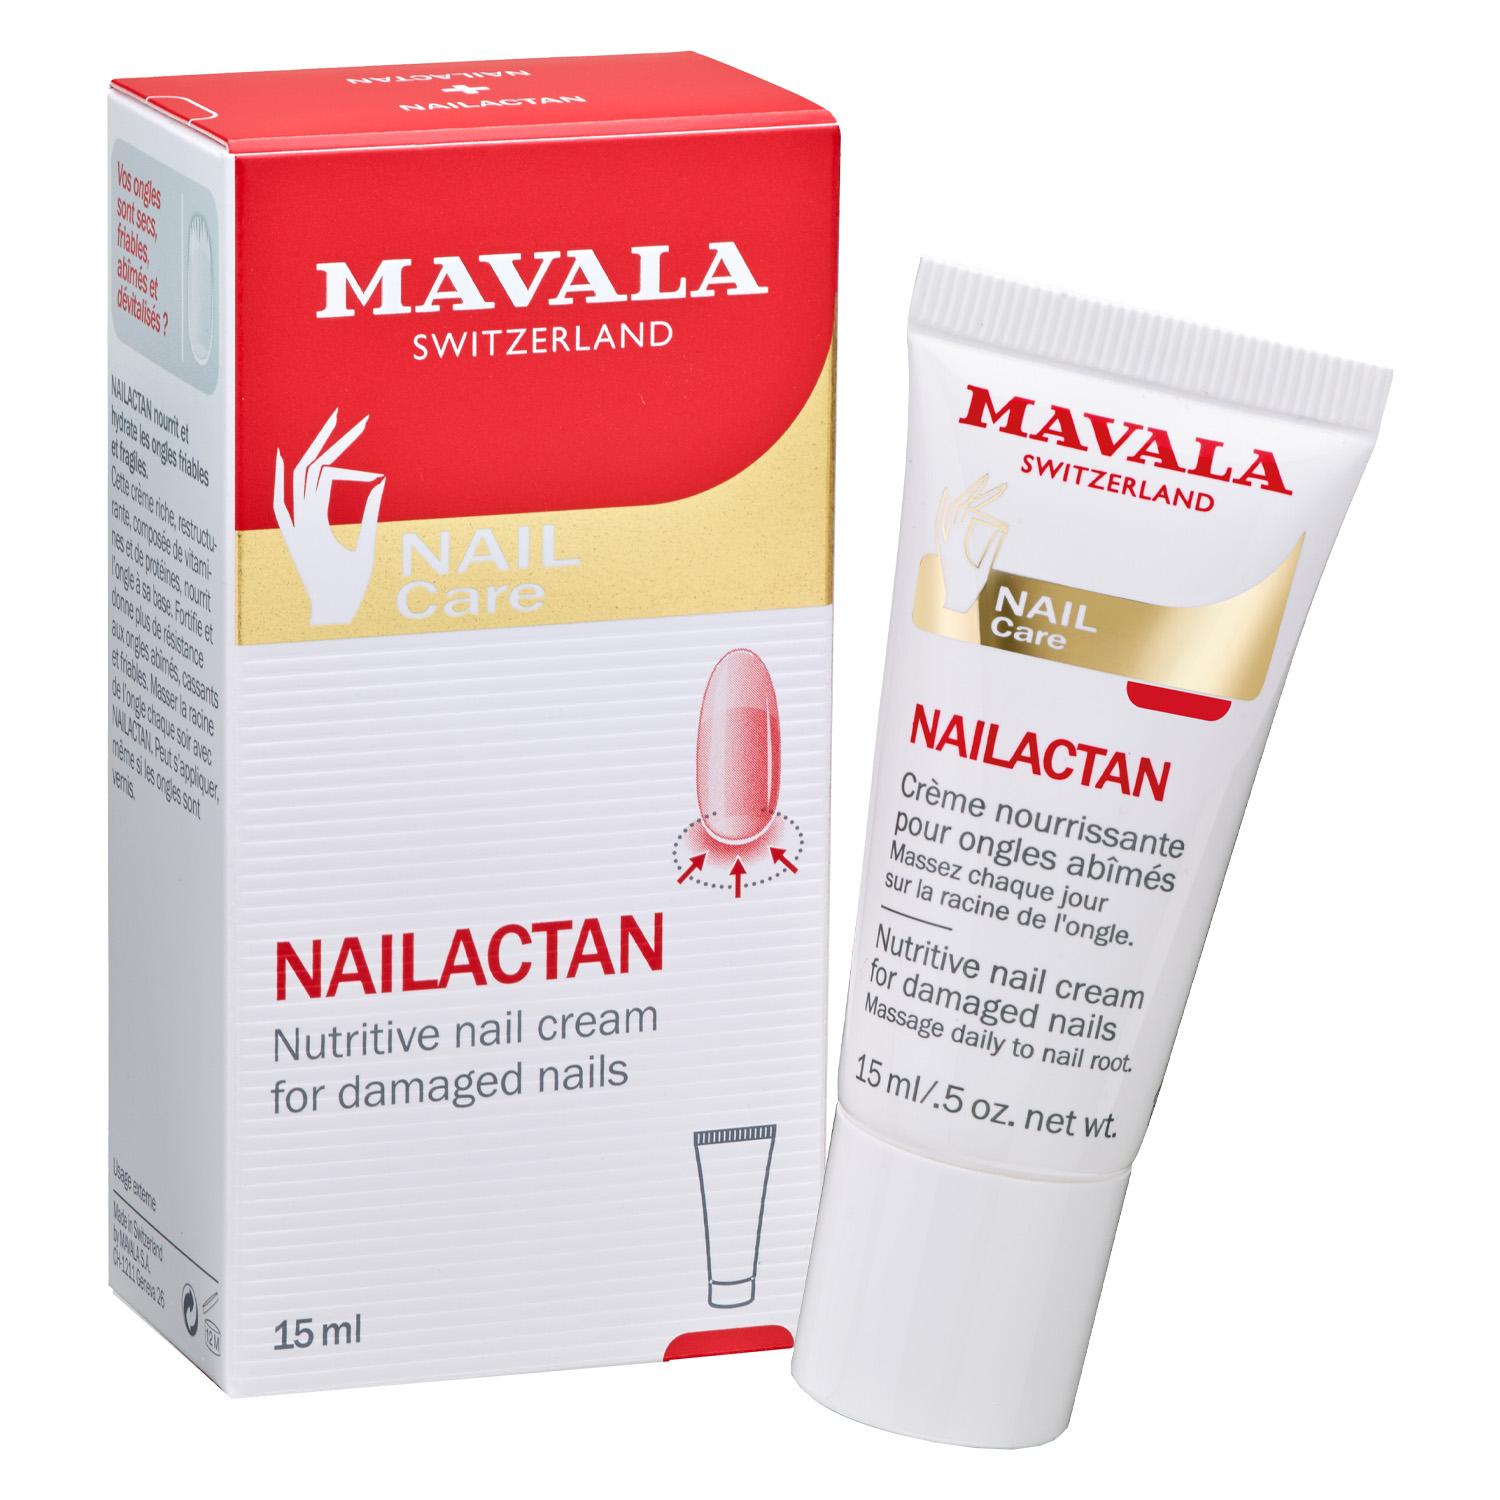 MAVALA Care - Nailactan in Tube